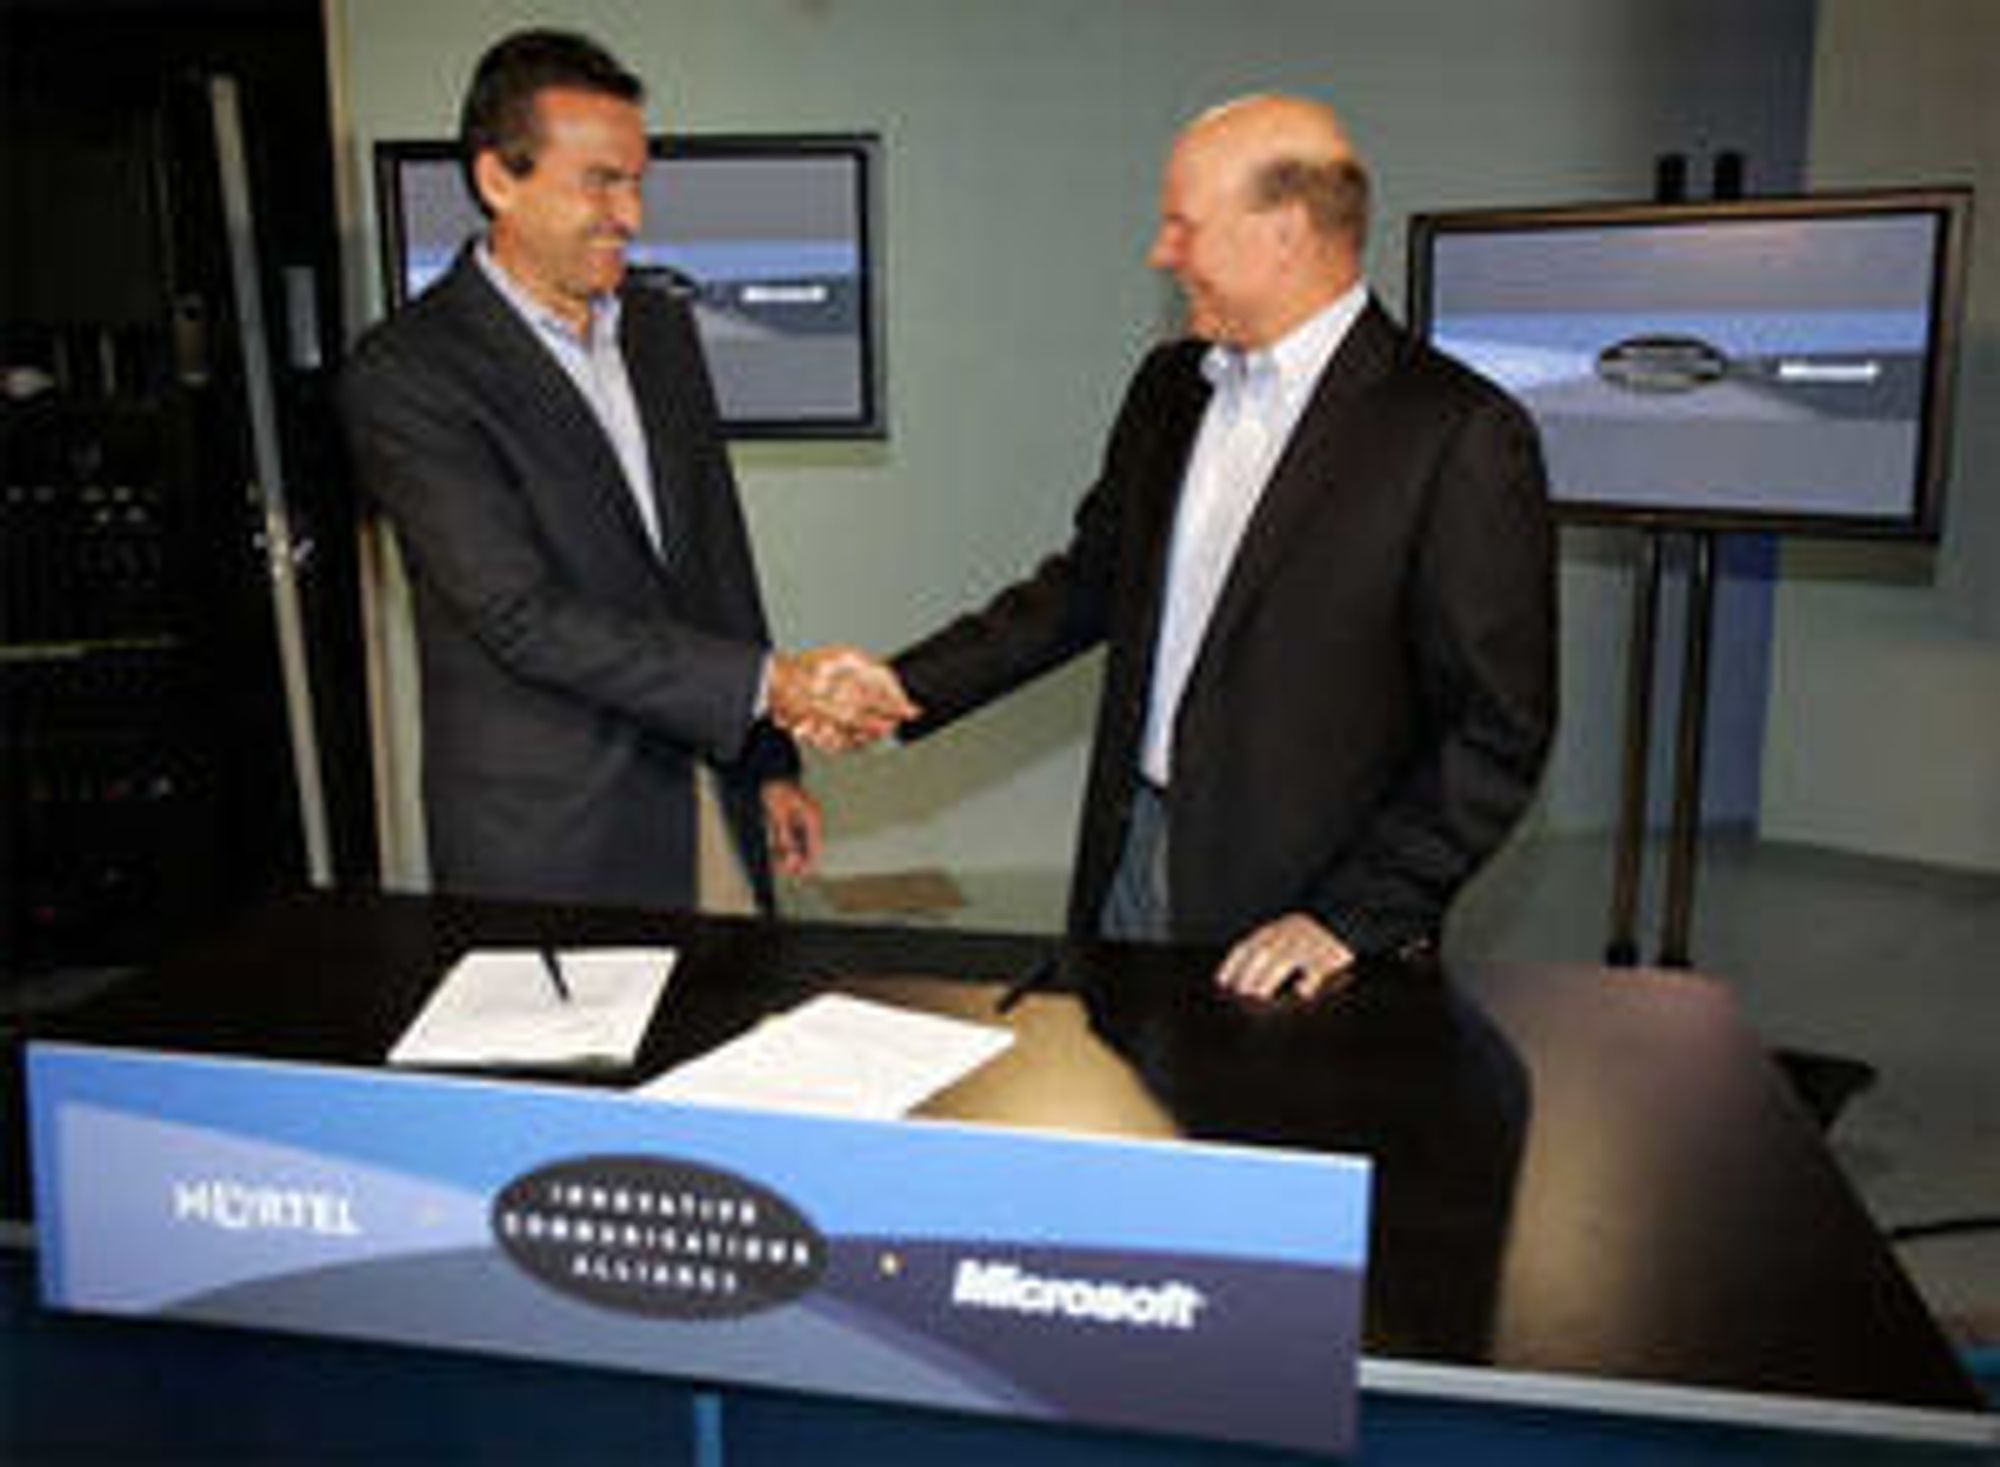 Daværende president i Nortel, Mike Zafirovski, og Microsoft-sjef Steve Ballmer kunngjorde et strategisk samarbeid i 2006.